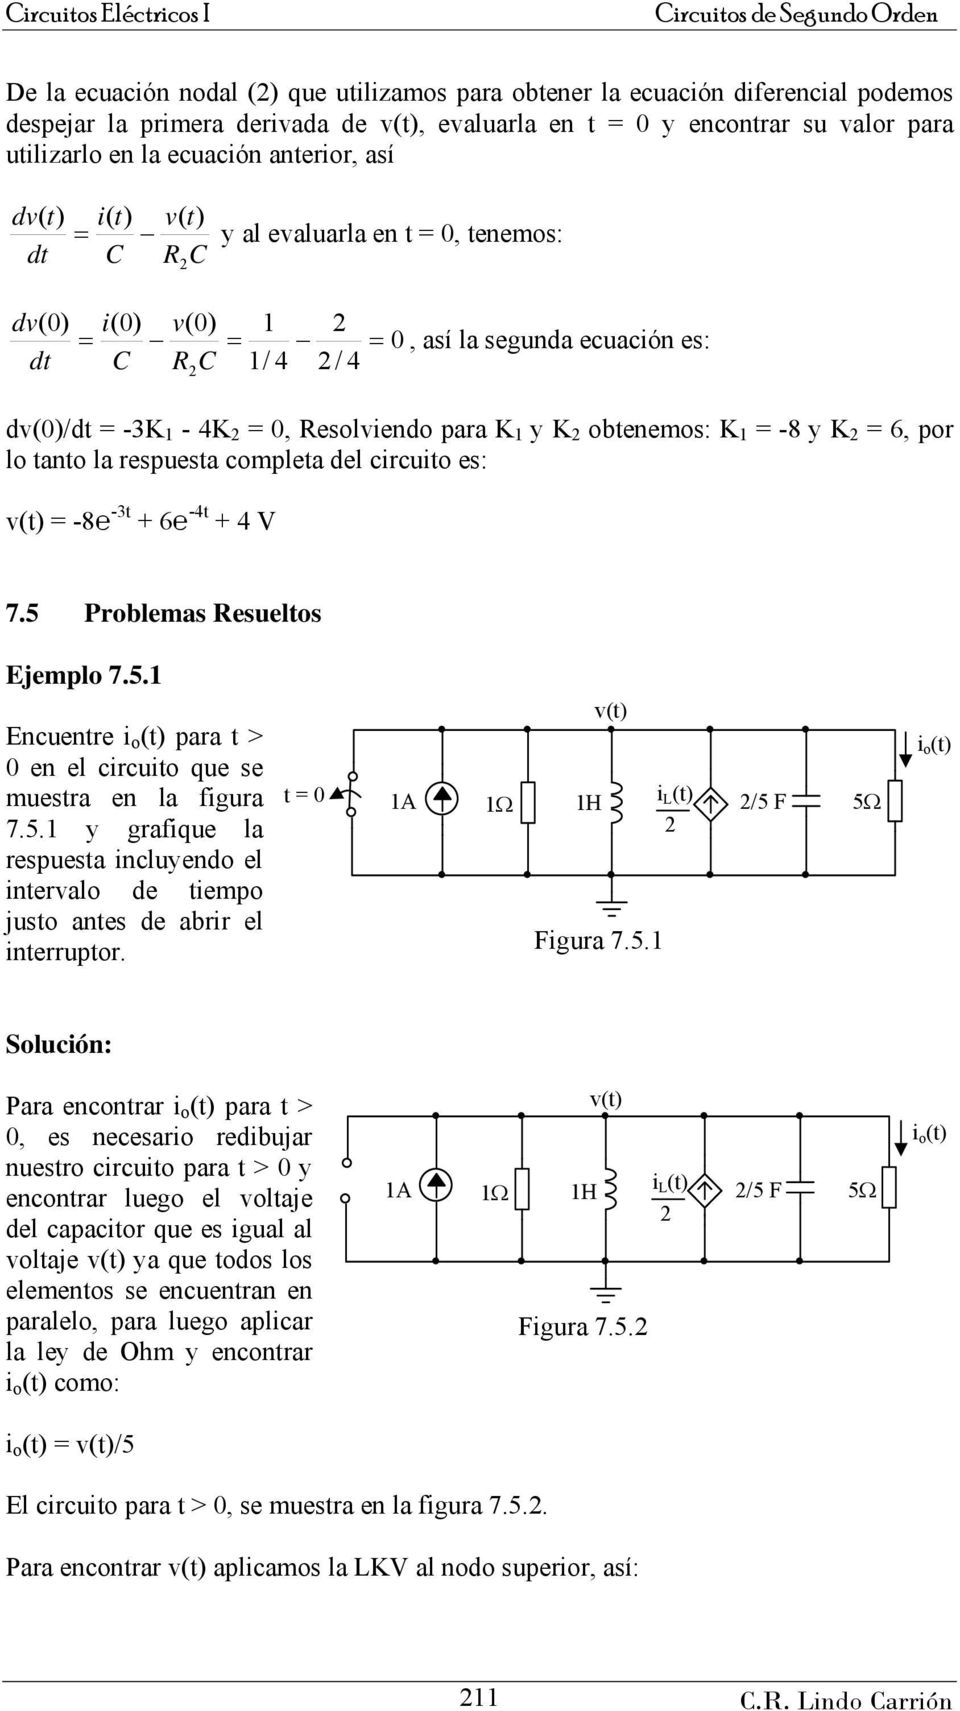 circuito es: v( = 8 3t 6 4t 4 V 7.5 Problemas Resueltos Ejemplo 7.5. Ecuetre i o ( para t > 0 e el circuito que se muestra e la figura 7.5. y grafique la respuesta icluyedo el itervalo de tiempo justo ates de abrir el iterruptor.